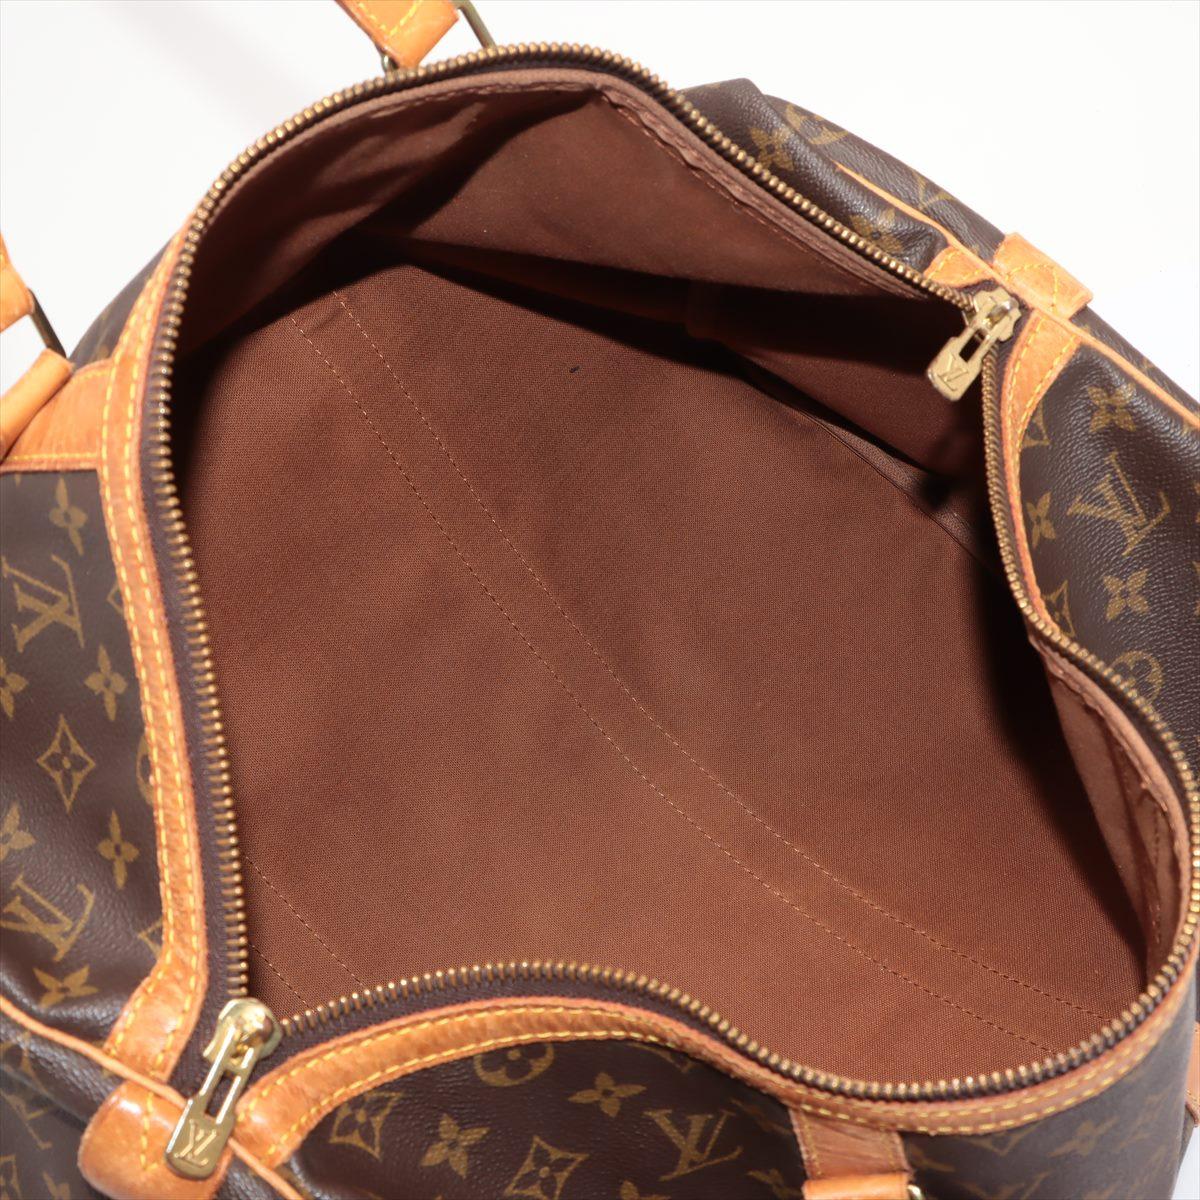 Louis Vuitton Brown Monogram Canvas Leather Sac Souple 45 cm Duffle Bag 2